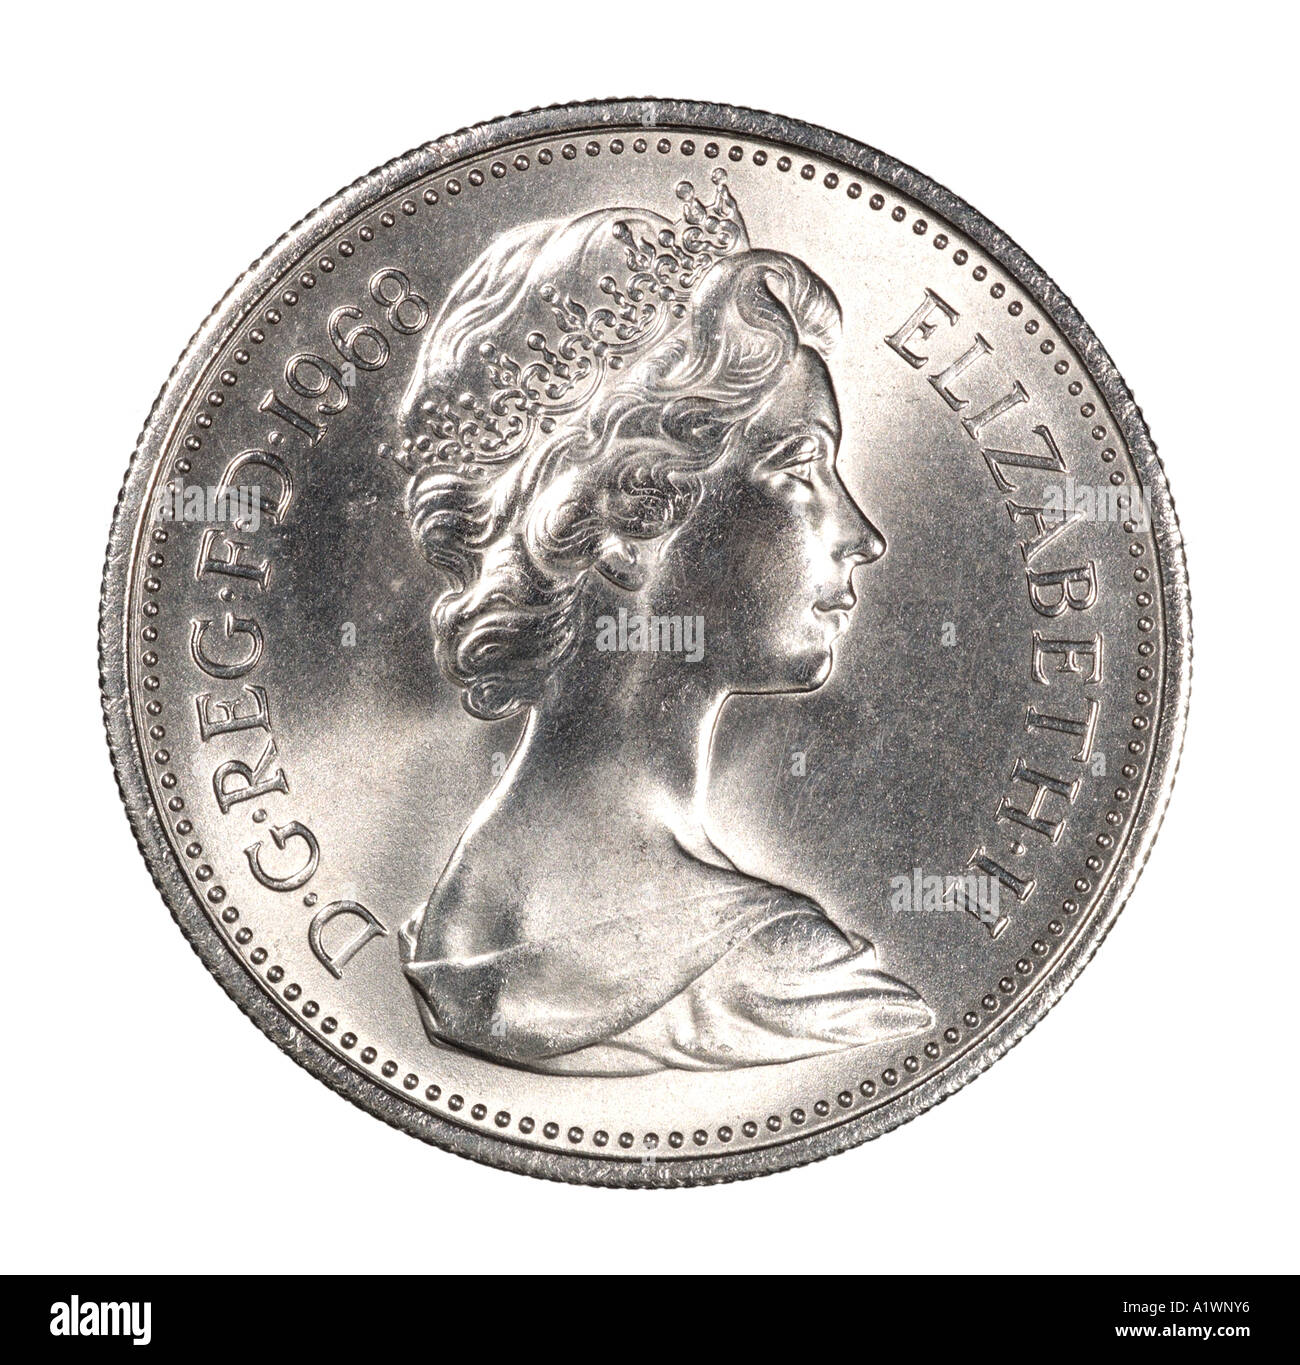 La reine Elizabeth II Regina Reg 2 virgule 5 cinq nouveaux pence P droit face aux jeunes de la couronne lumineuse argent profil Banque D'Images